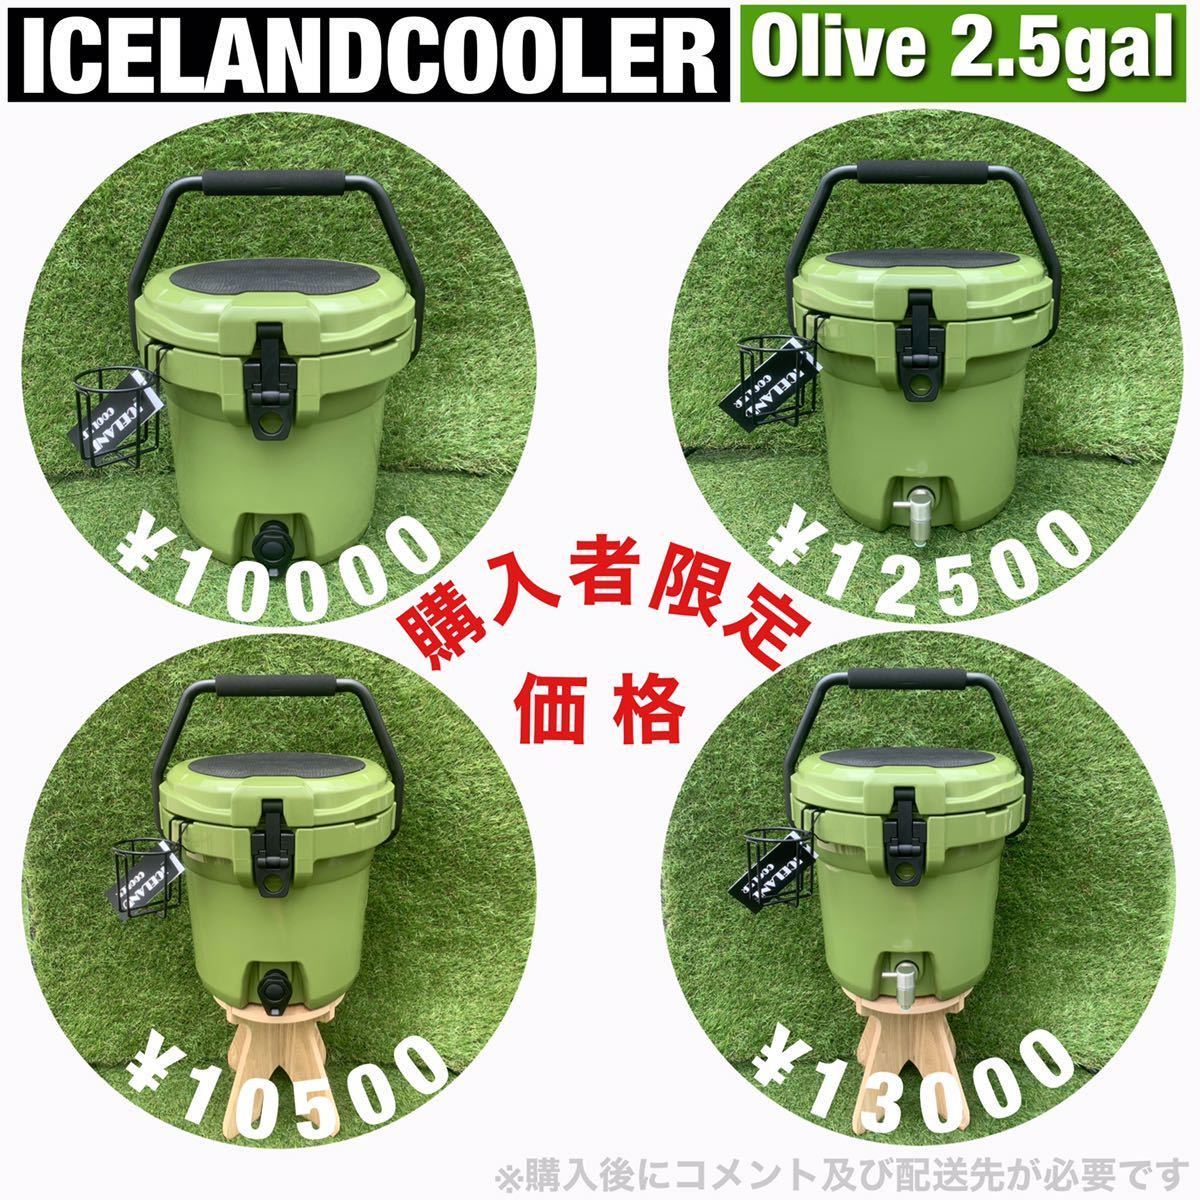 New ICELAND COOLER アイスランドクーラーボックス 45QT 期間限定セール 購入特典付き 別注カラー